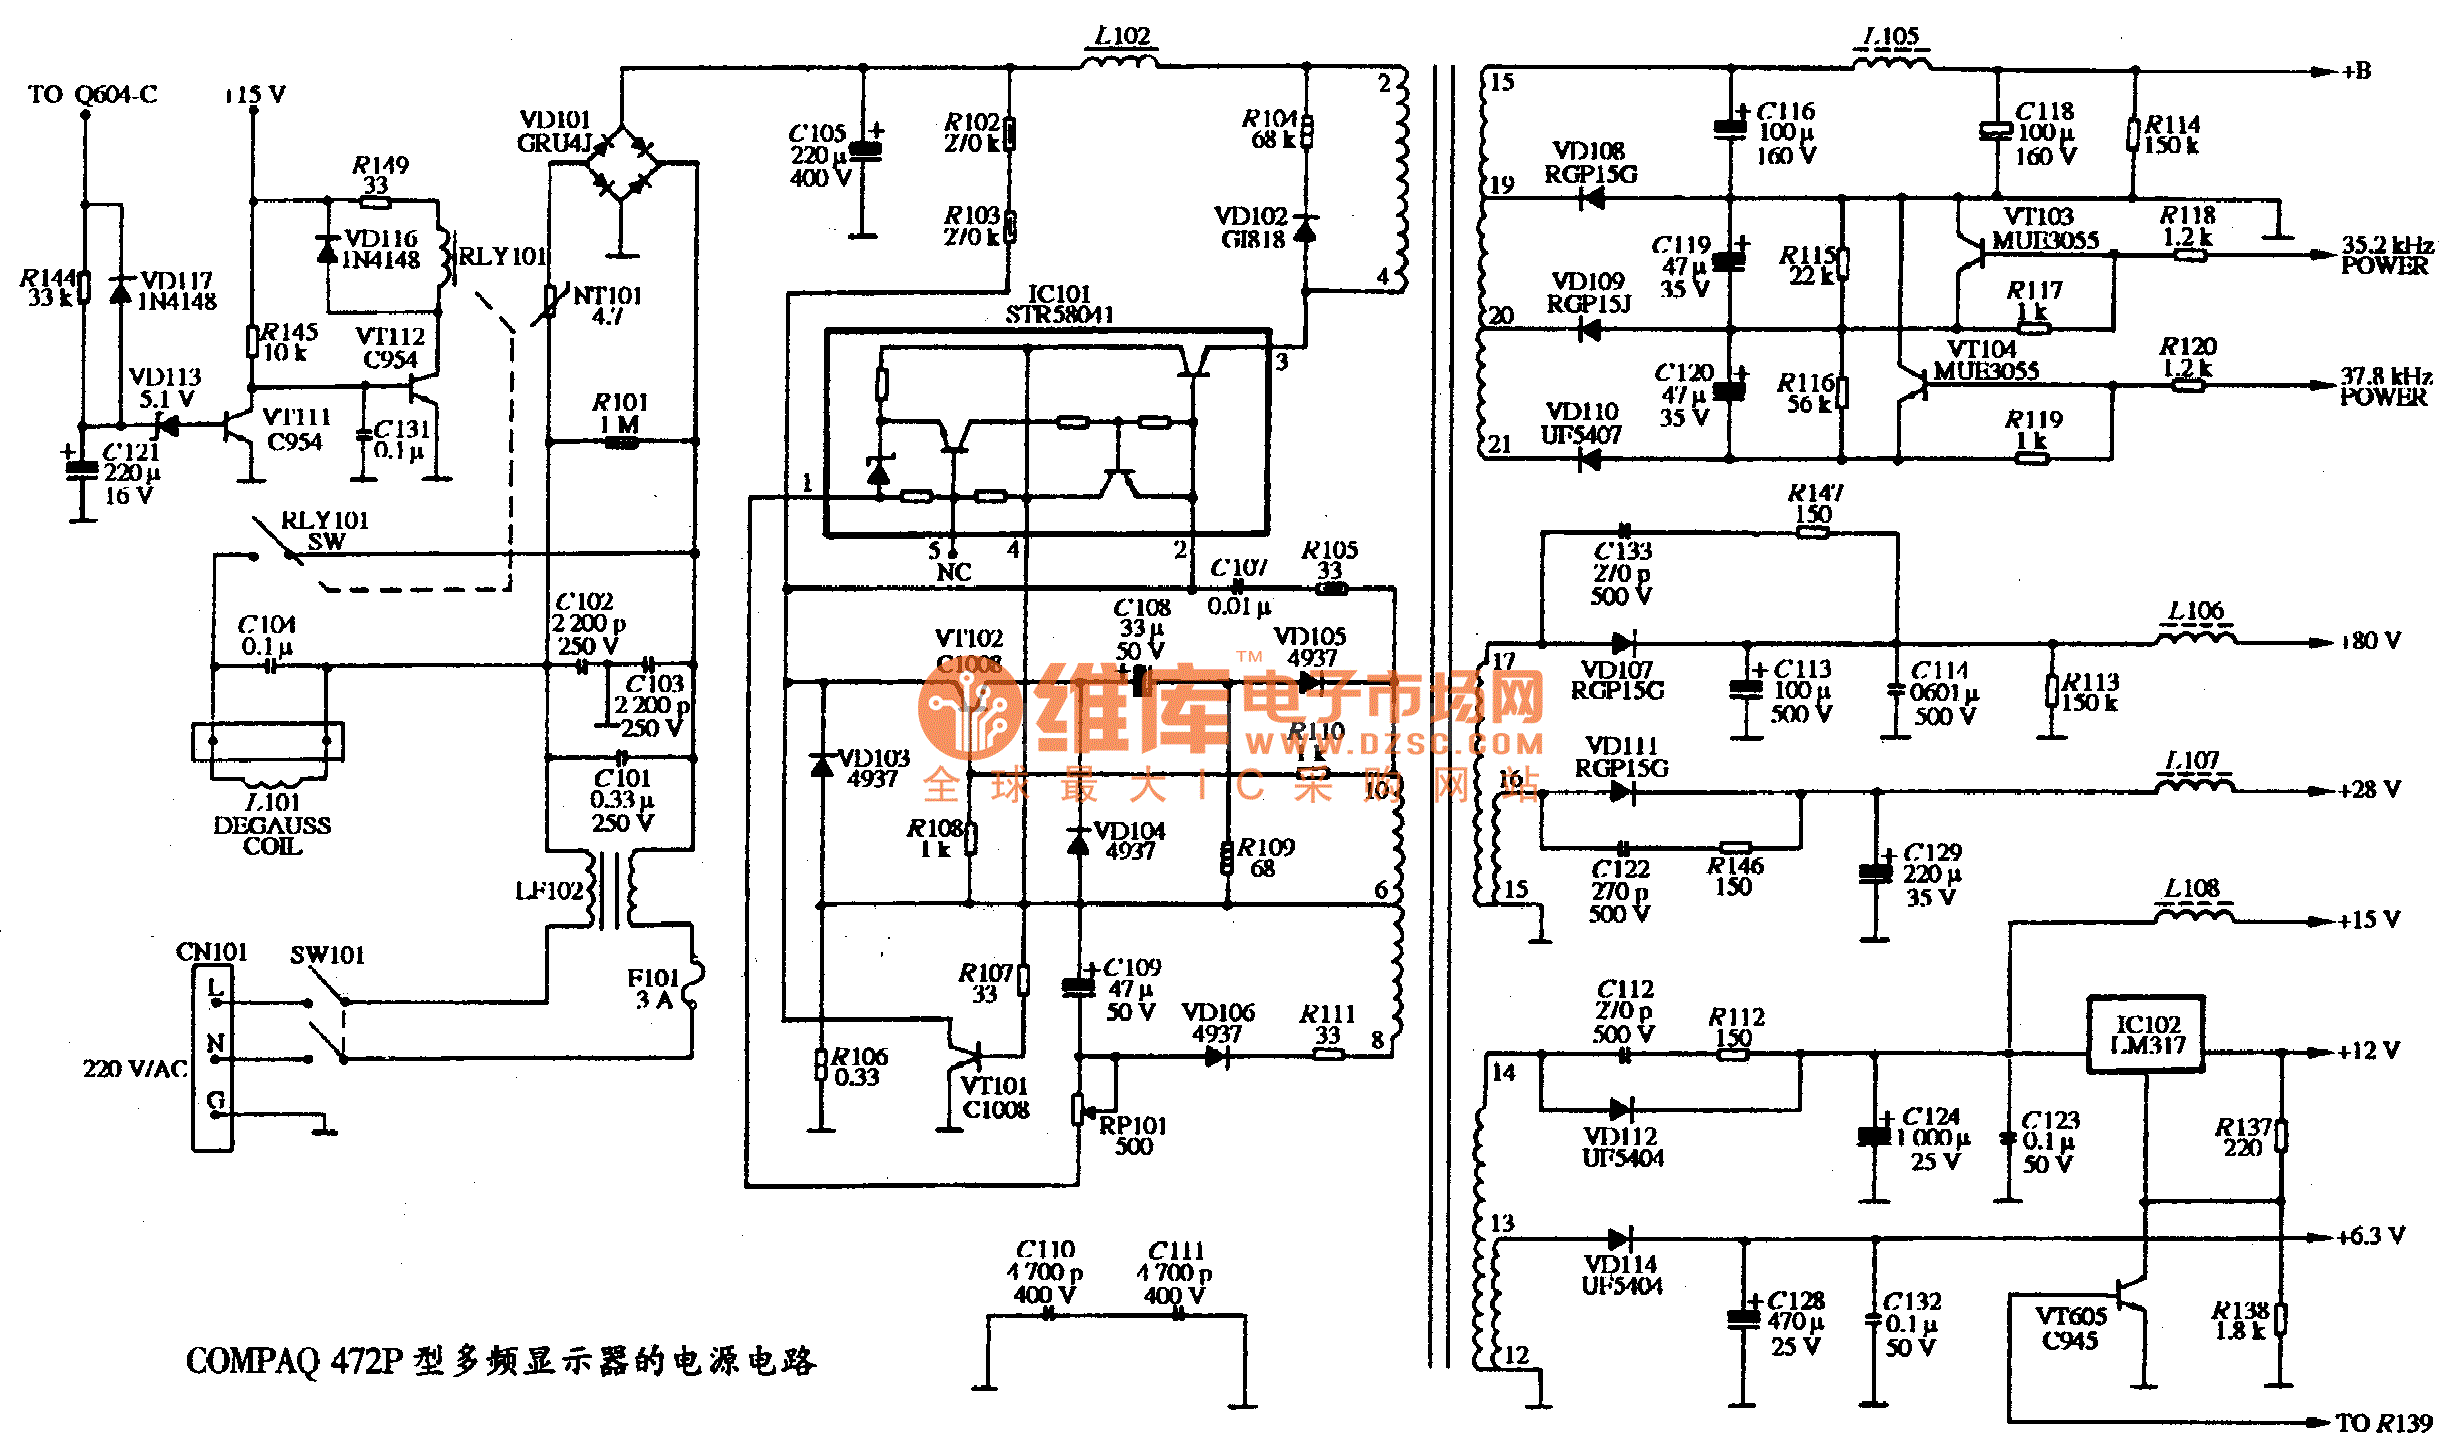 The power supply circuit diagram of COMPAQ 472P multi ...